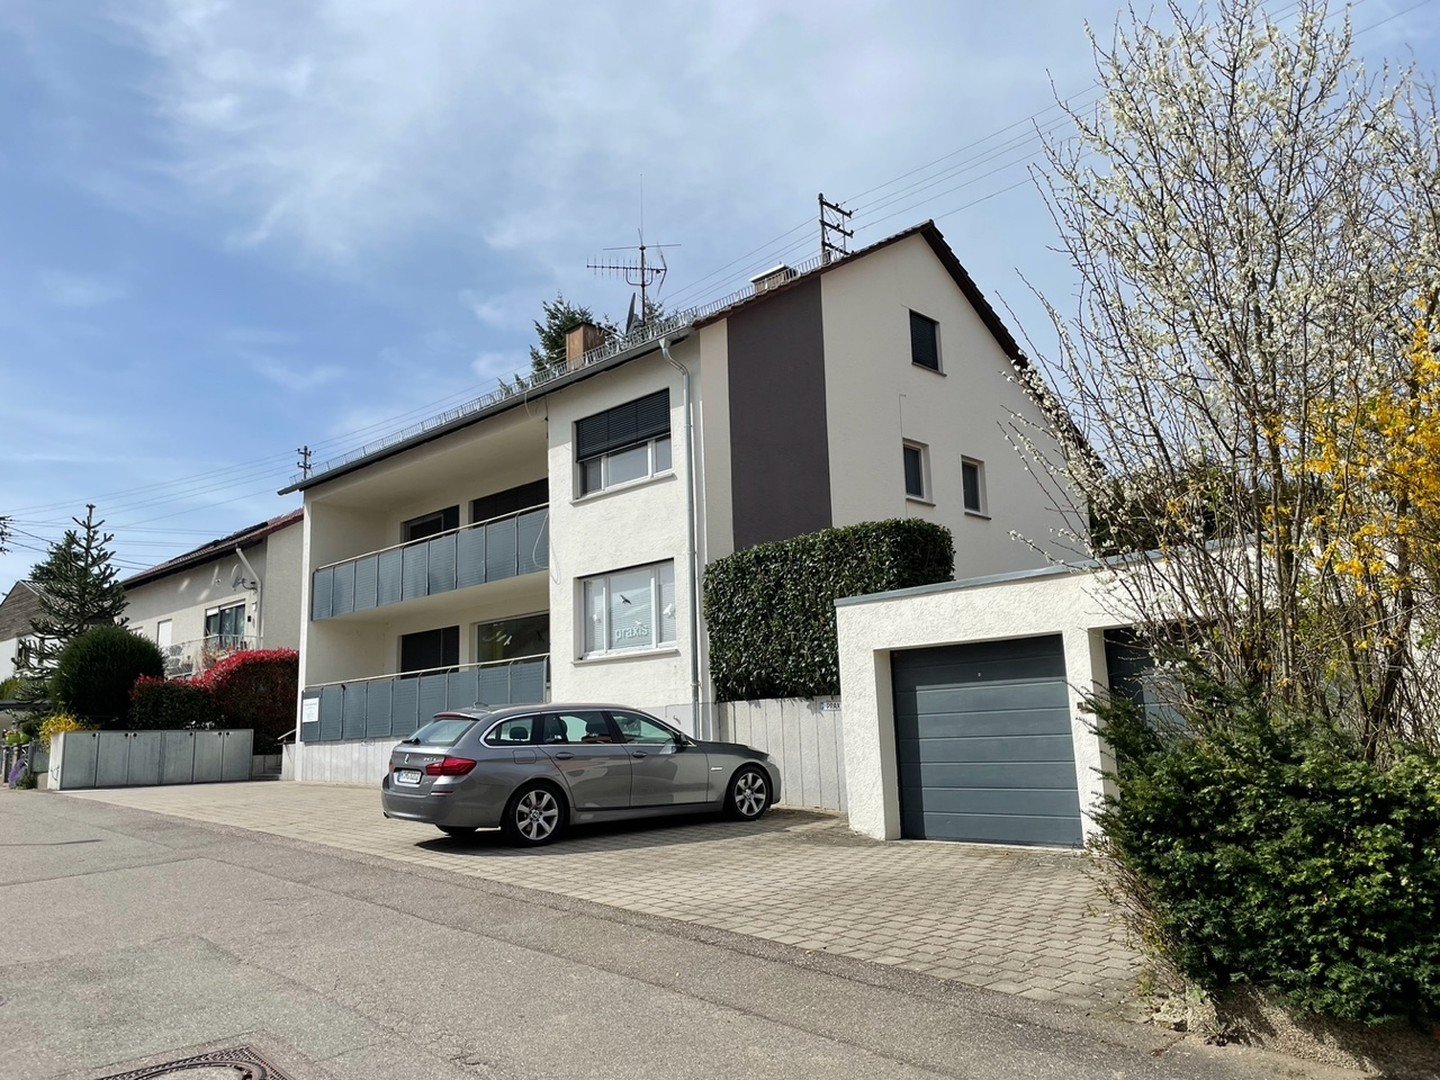 Für Kapitalanleger und Eigennutzer: 3-Einheiten Mehrfamilienhaus in Untergruppenbach von privat